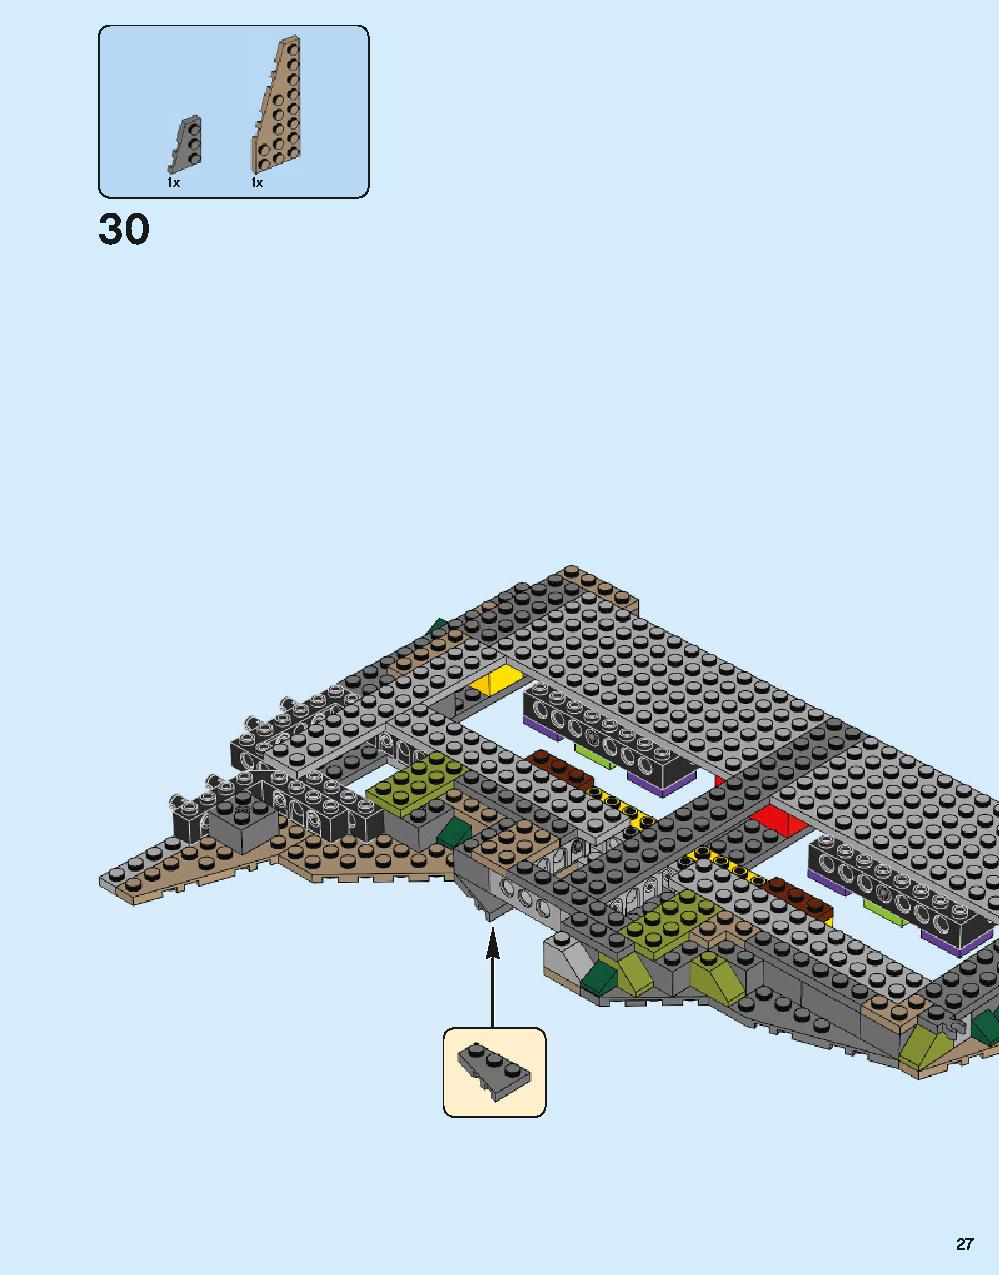 ホグワーツ城 71043 レゴの商品情報 レゴの説明書・組立方法 27 page